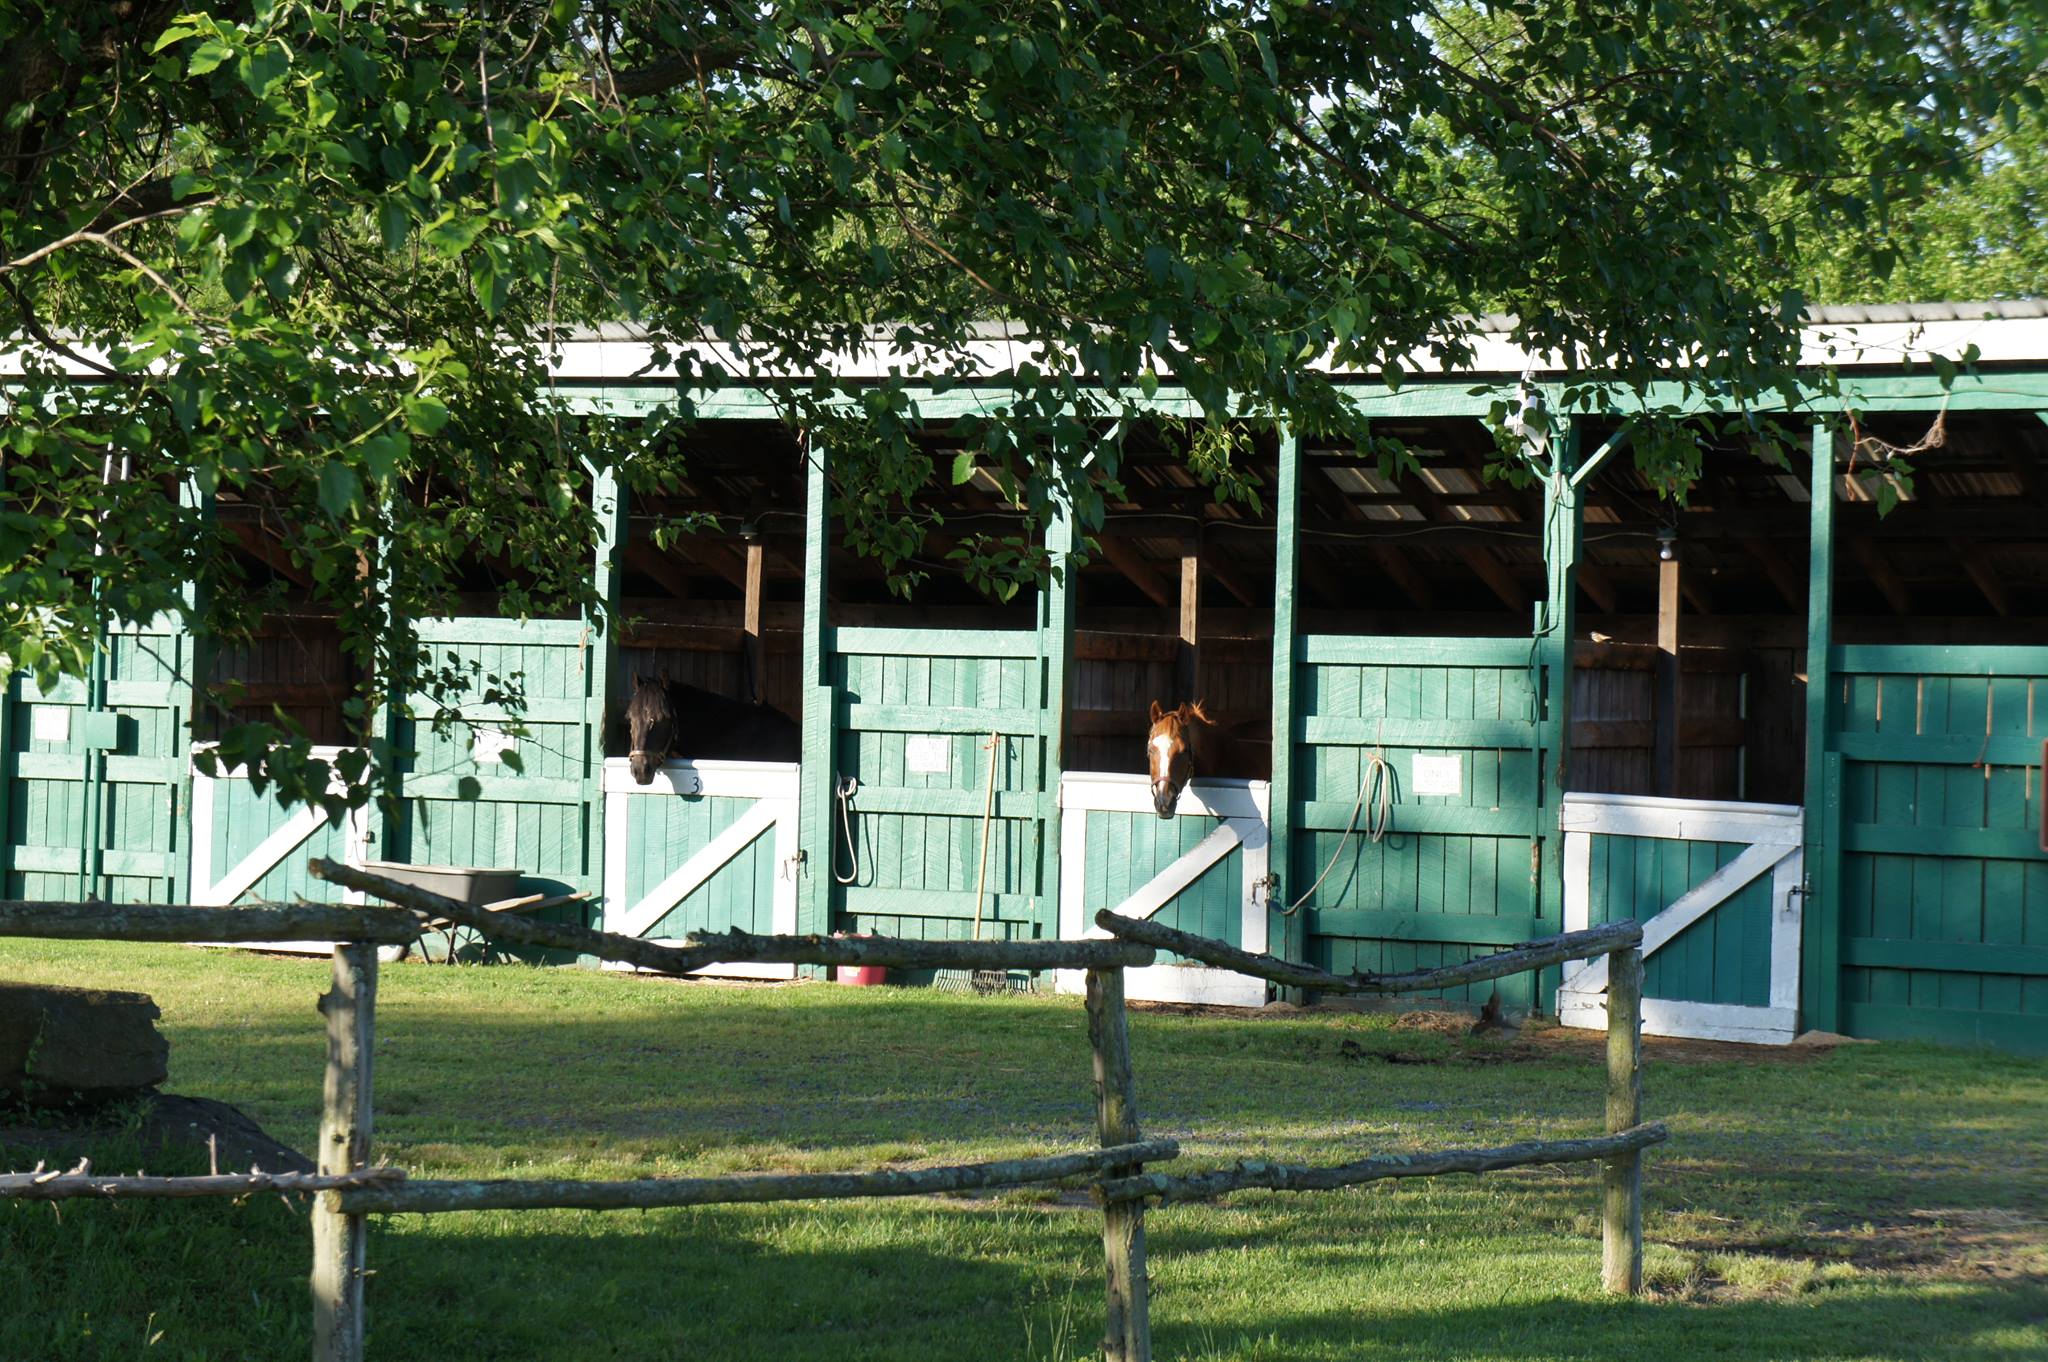 Artillery Ridge Campground & Gettysburg Horse Park - stalls